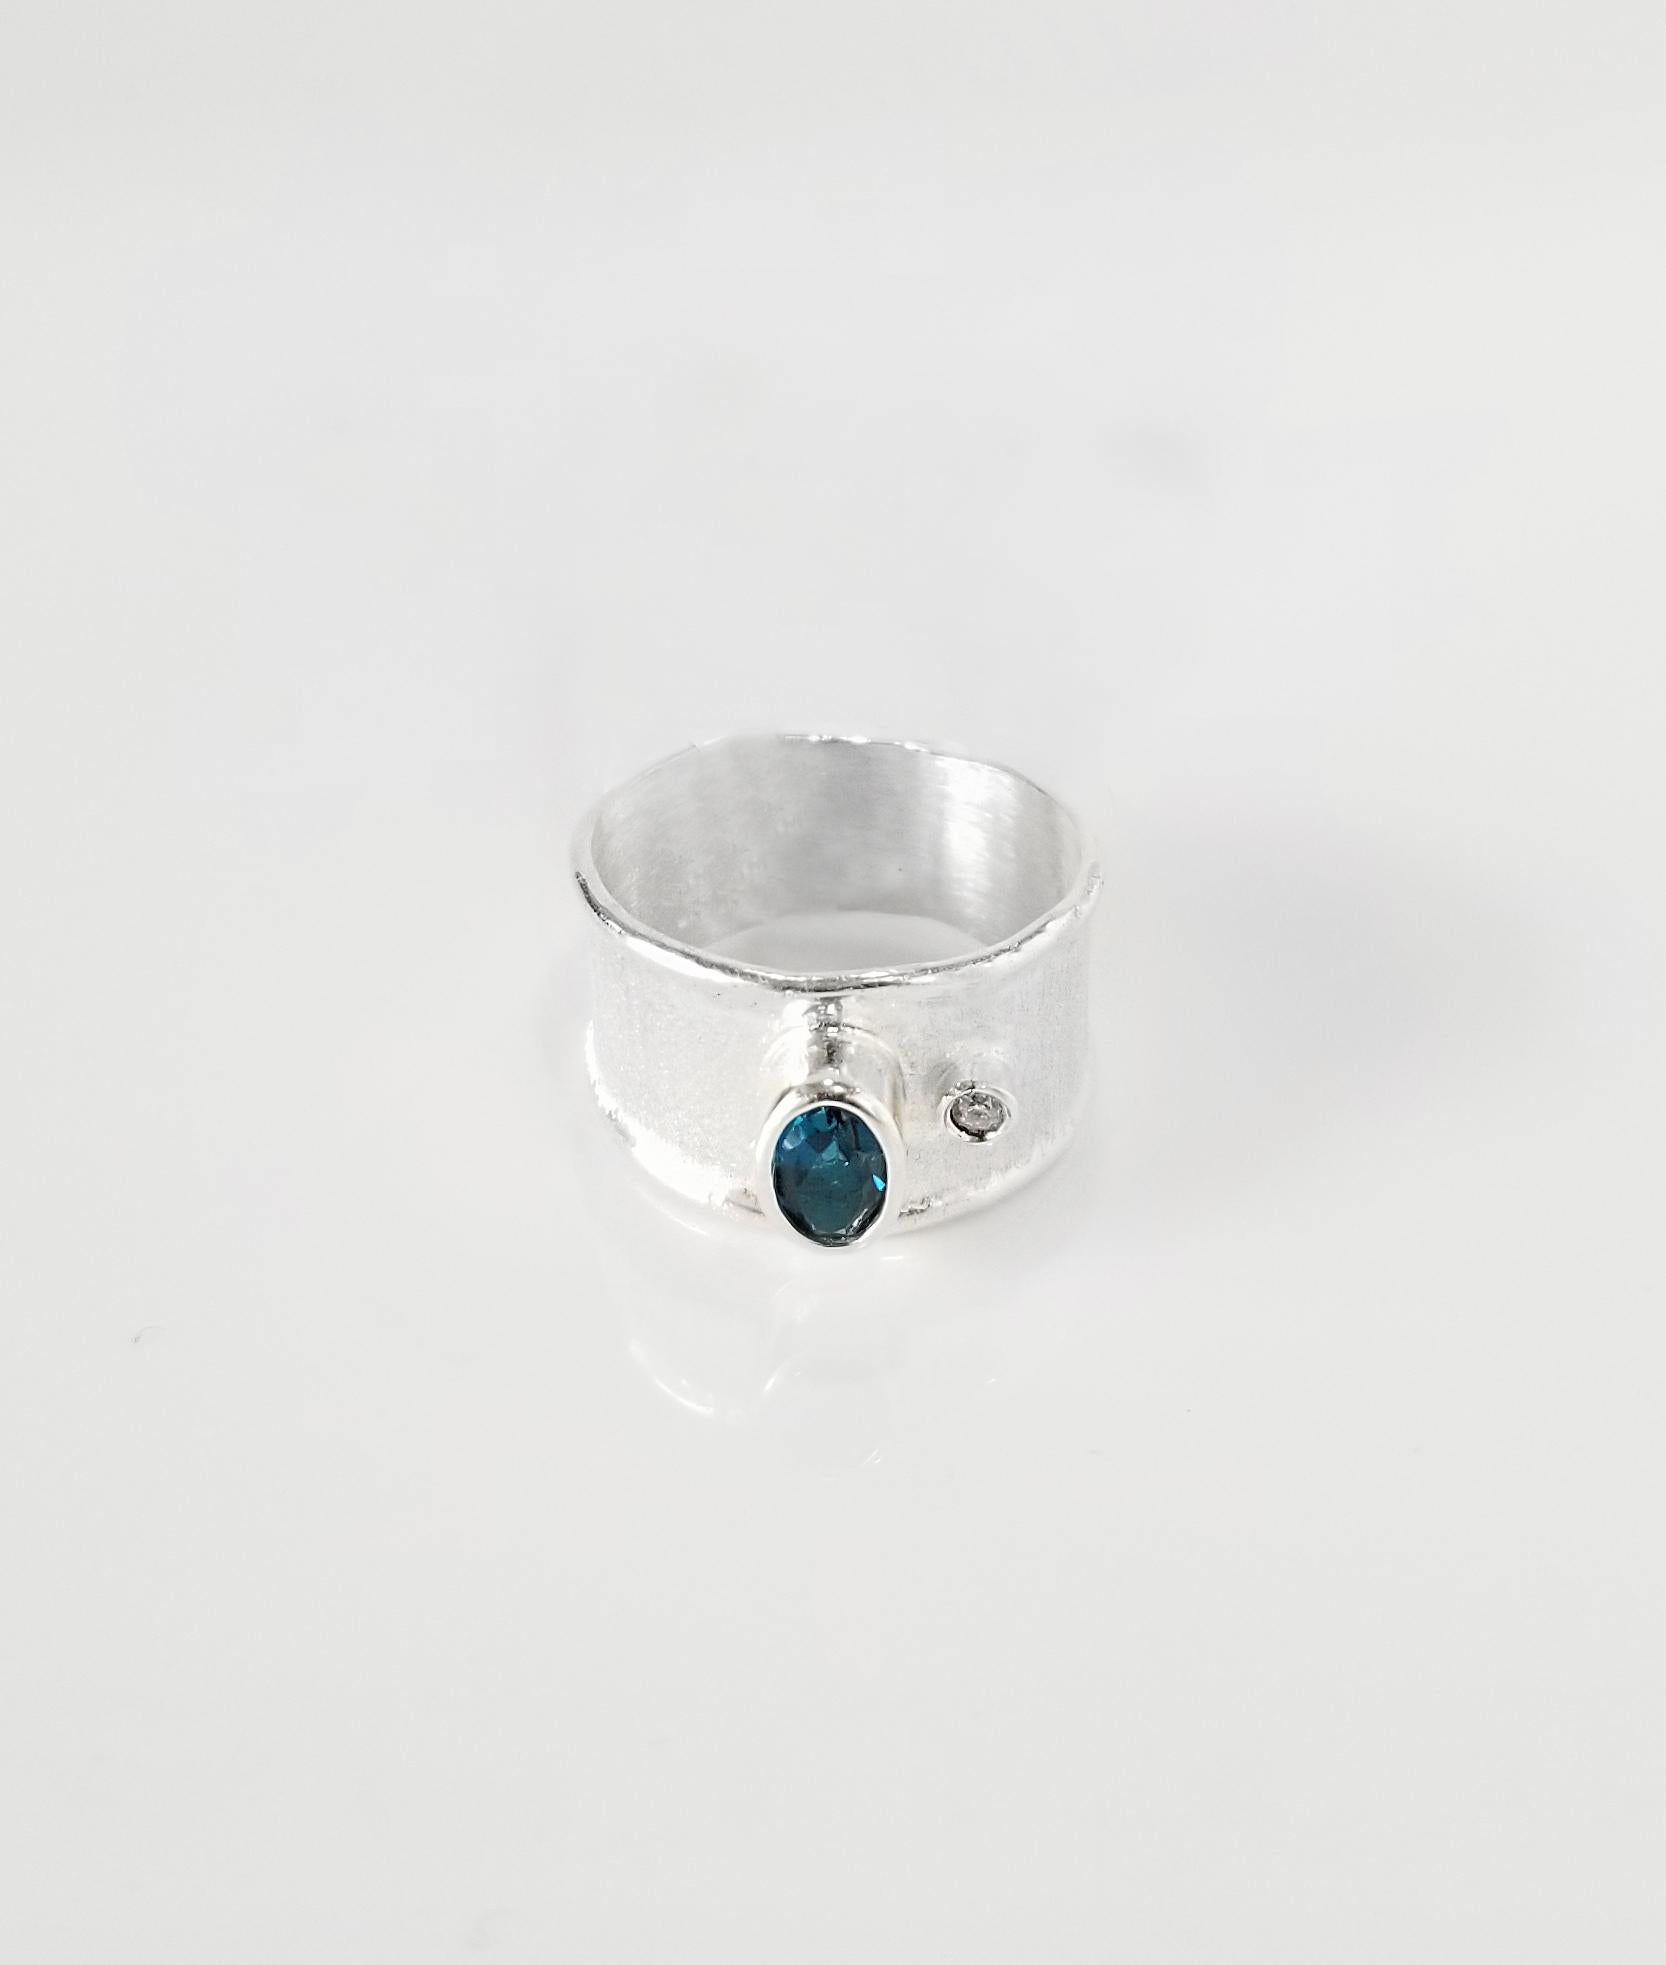 La bague en argent fin de la collection Ammos de Yianni Creations est 100% artisanale et présente une topaze bleue de Londres de 0,40 carat accompagnée d'un diamant blanc taille brillant de 0,03 carat, le tout agrémenté de techniques artisanales